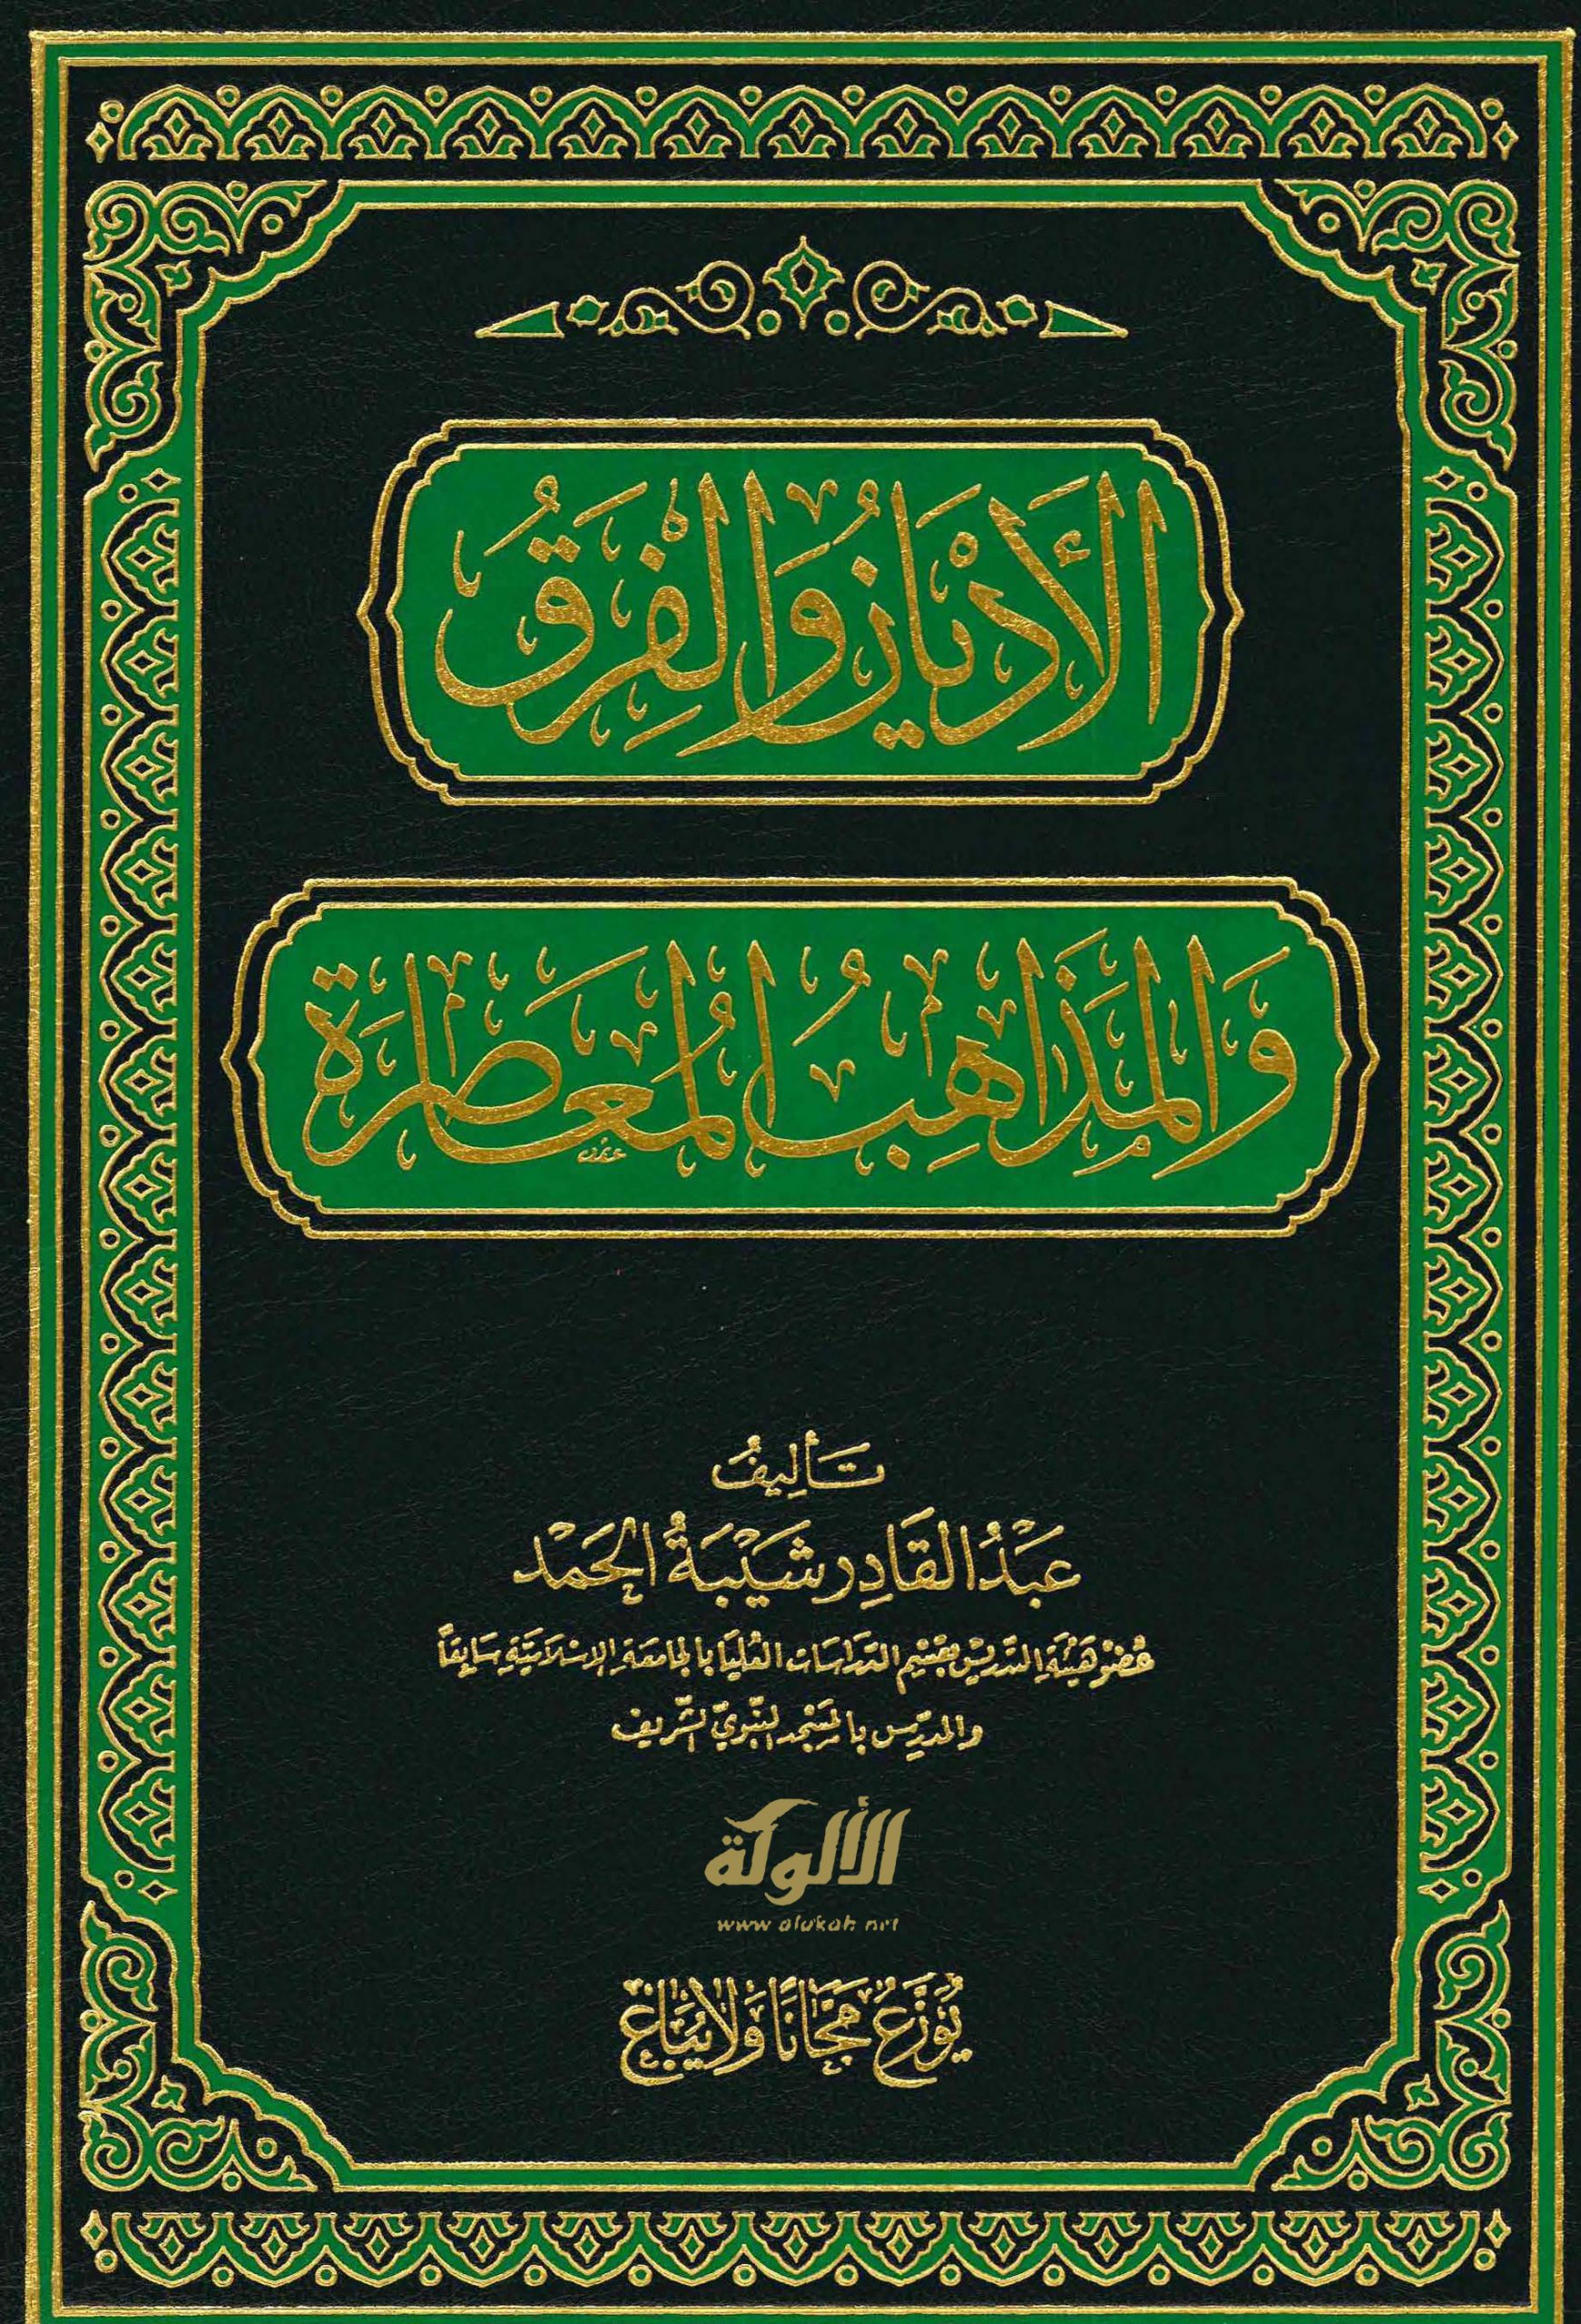 تحميل كتاب الأديان والفرق والمذاهب المعاصرة pdf عبد القادر شيبة الحمد